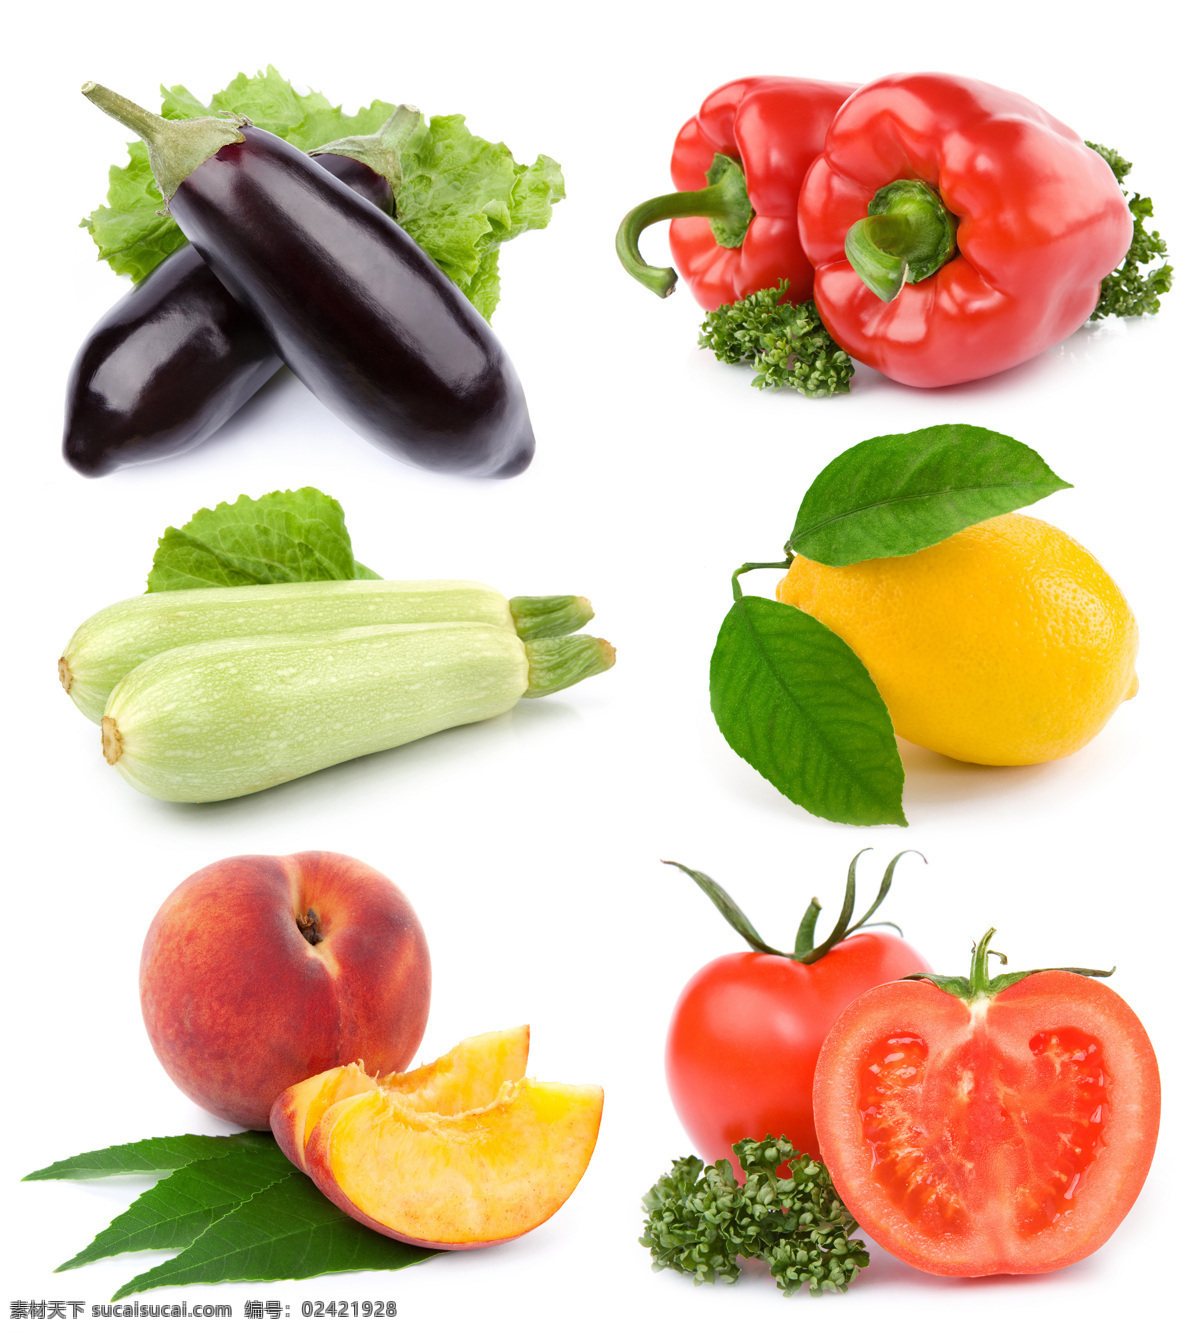 新鲜 蔬果 食物 蔬菜 新鲜蔬菜 鲜艳 美味 可口 水果 桃子 番茄 柠檬 辣椒 蔬菜图片 餐饮美食